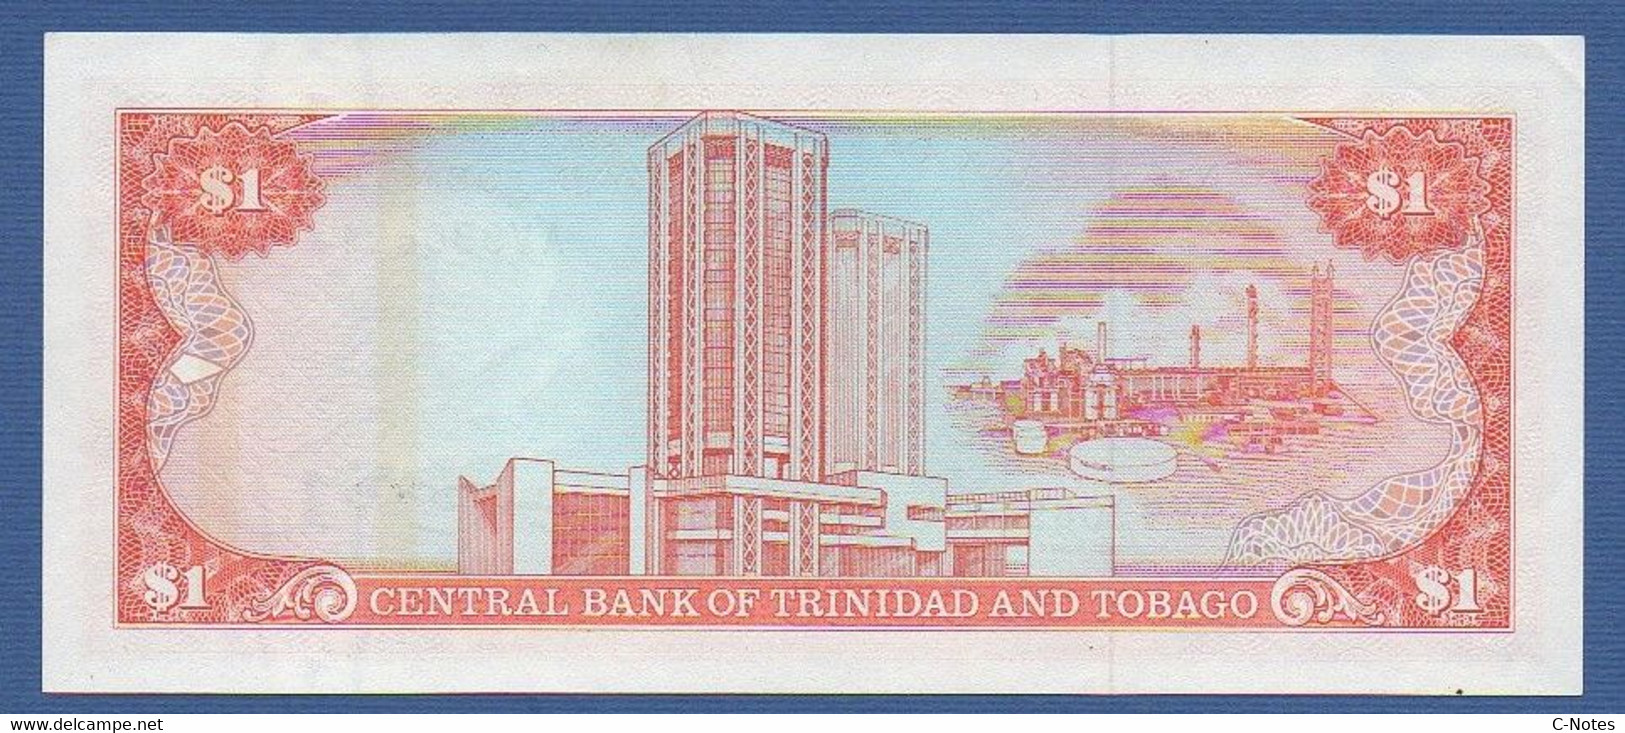 TRINIDAD & TOBAGO - P.36a – 1 Dollar ND (1985) "Chap. 79.02 - Arms" Issue UNC, Serie AV990891 - Trinidad & Tobago